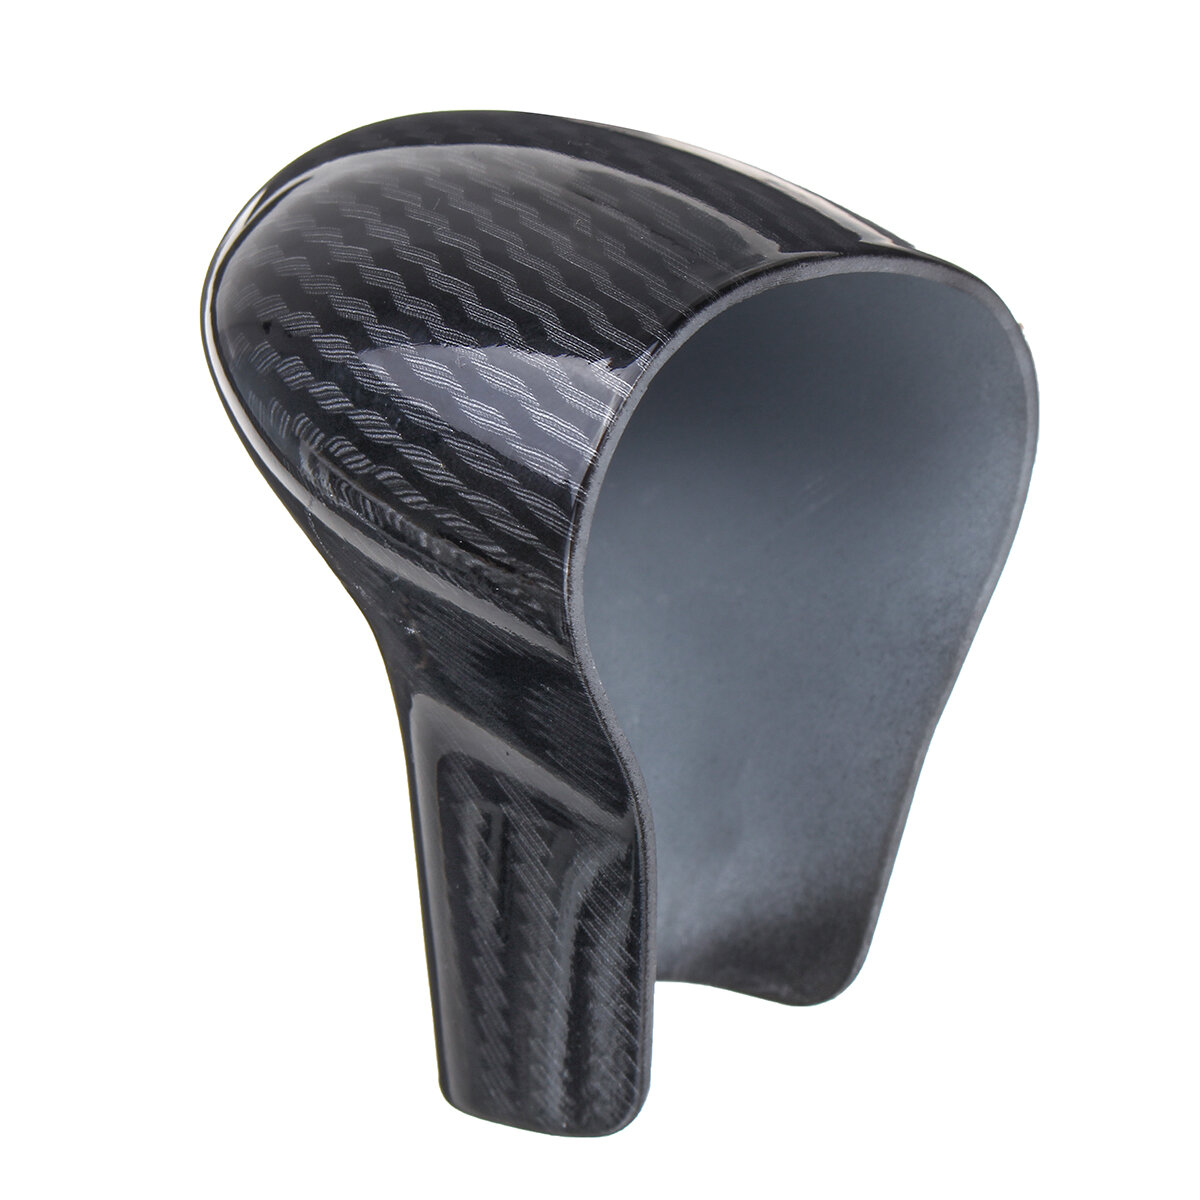 Carbon Fiber Look Gear Shift Knob Head Cover Cap For Audi S6 S7 A4 A5 A6 A7 Q5 Q7